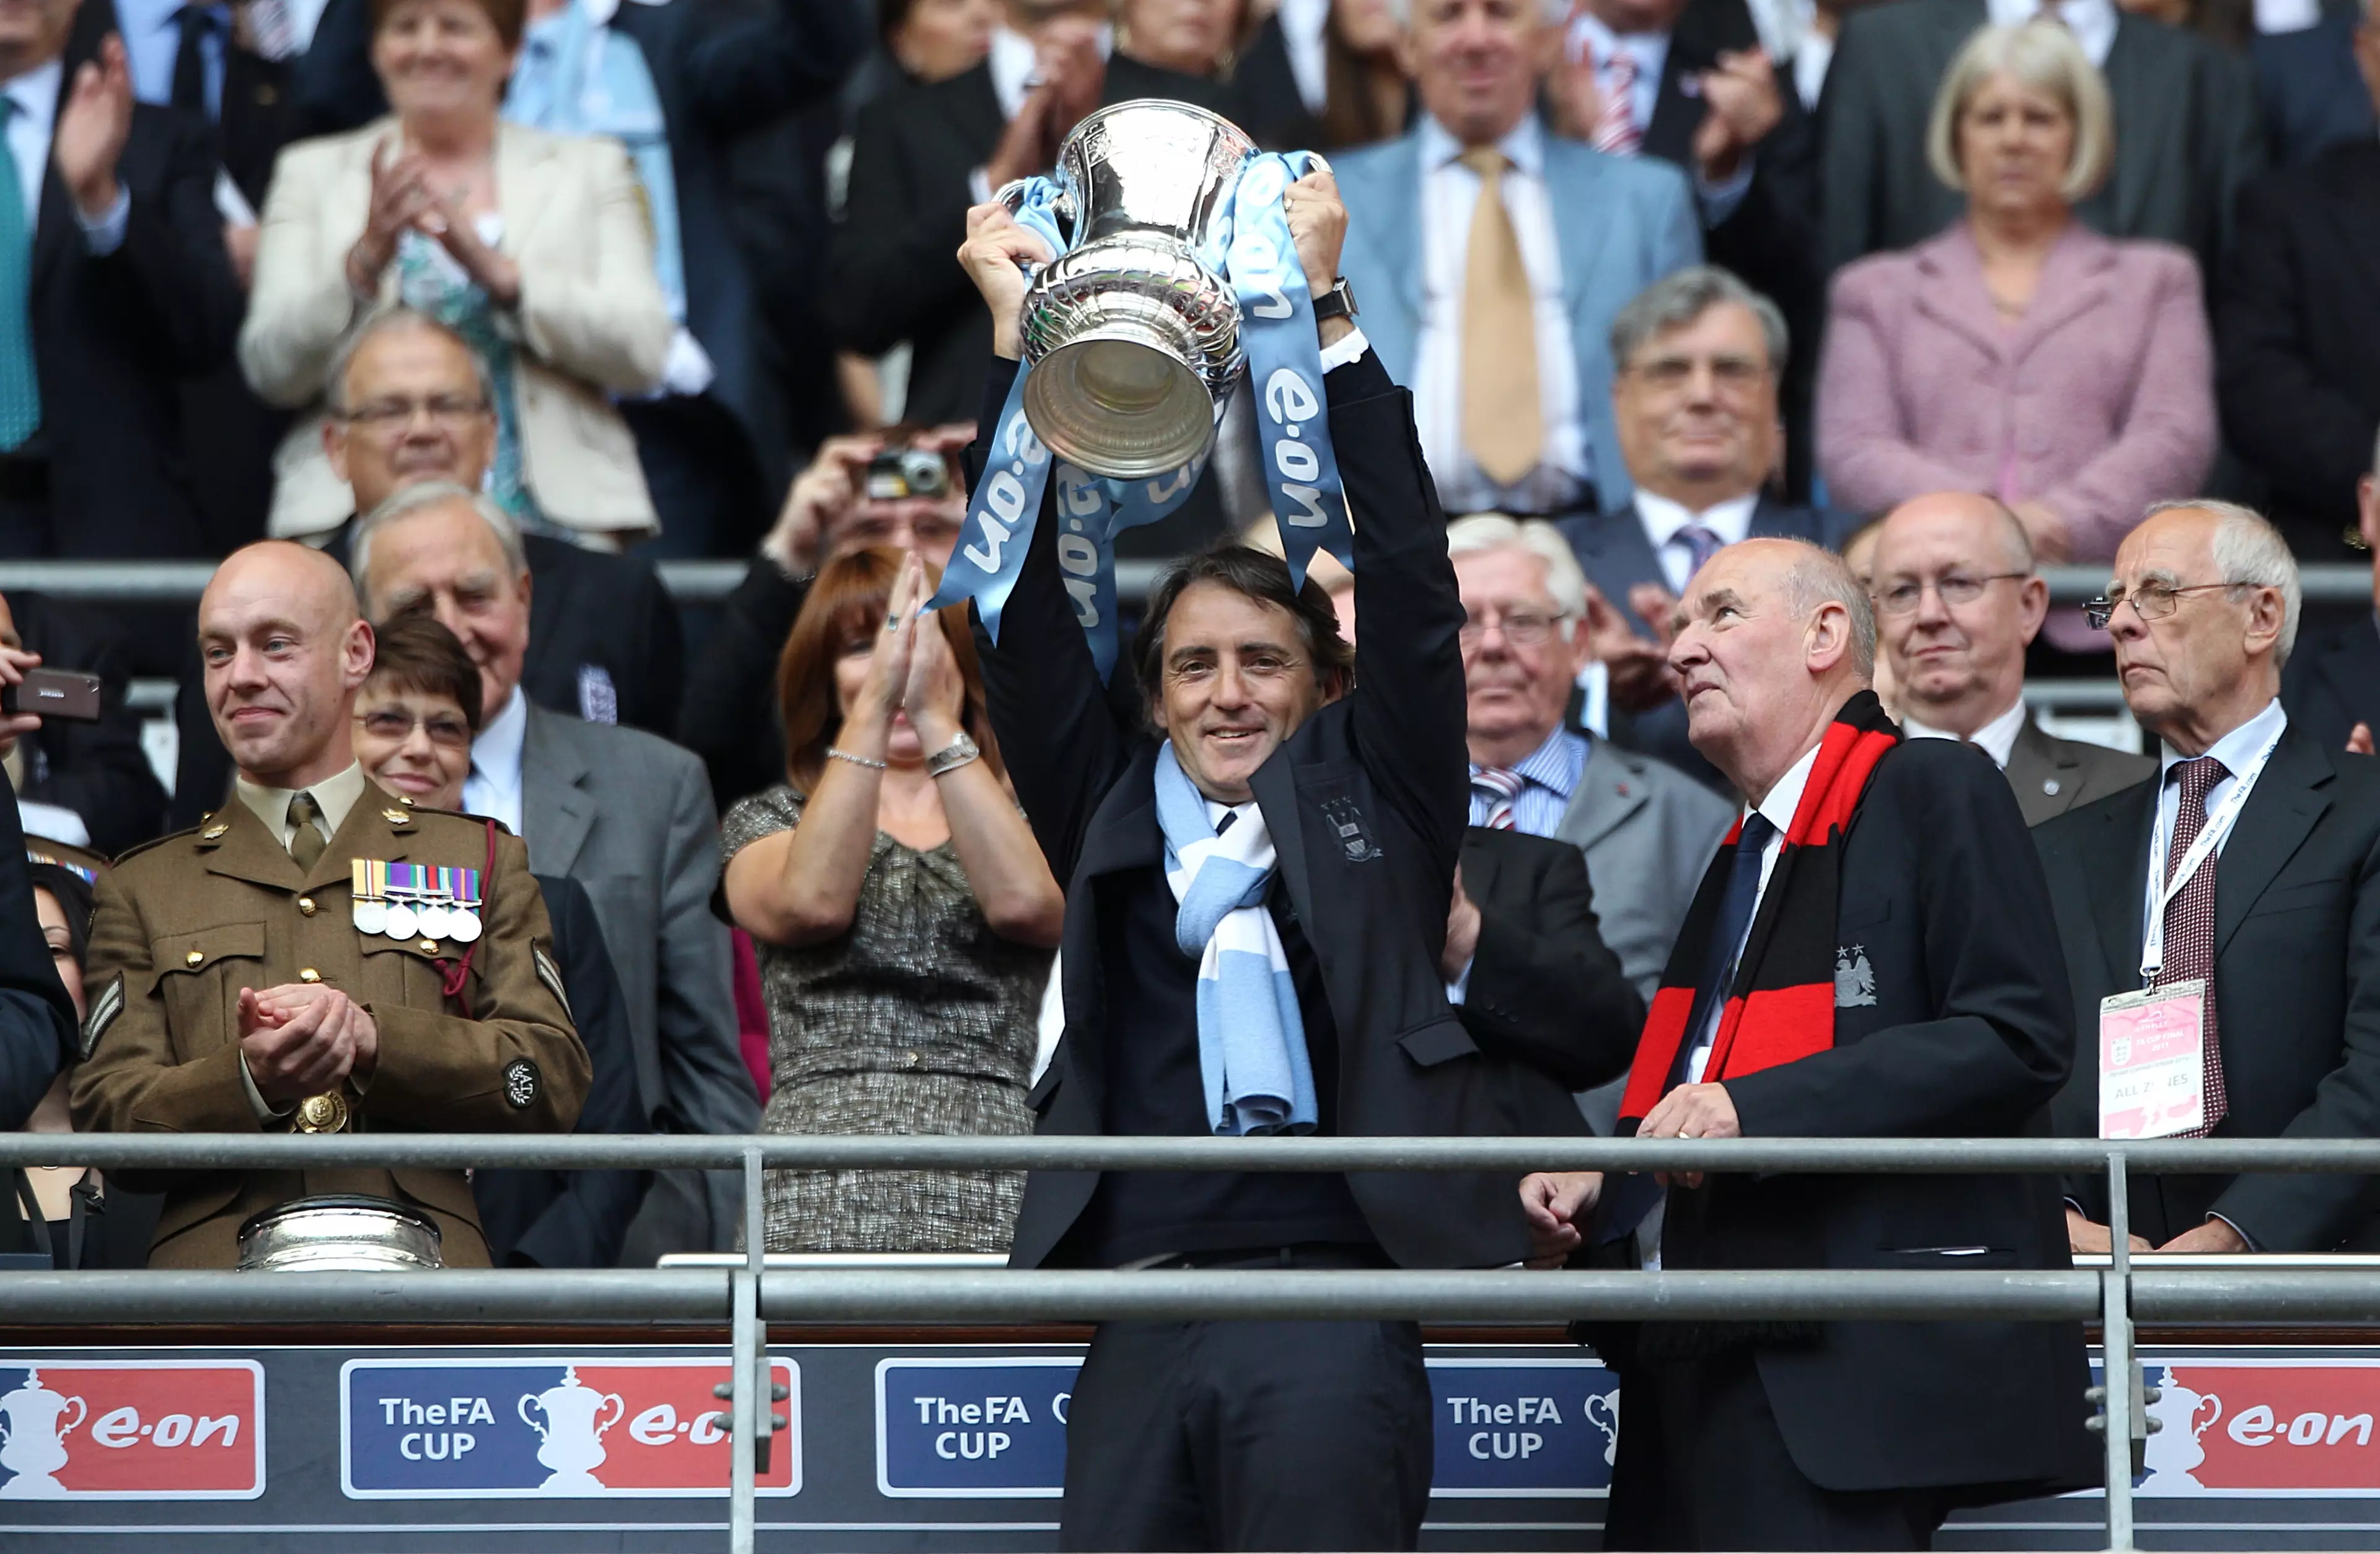 Mancini holds aloft the FA Cup. Image: PA